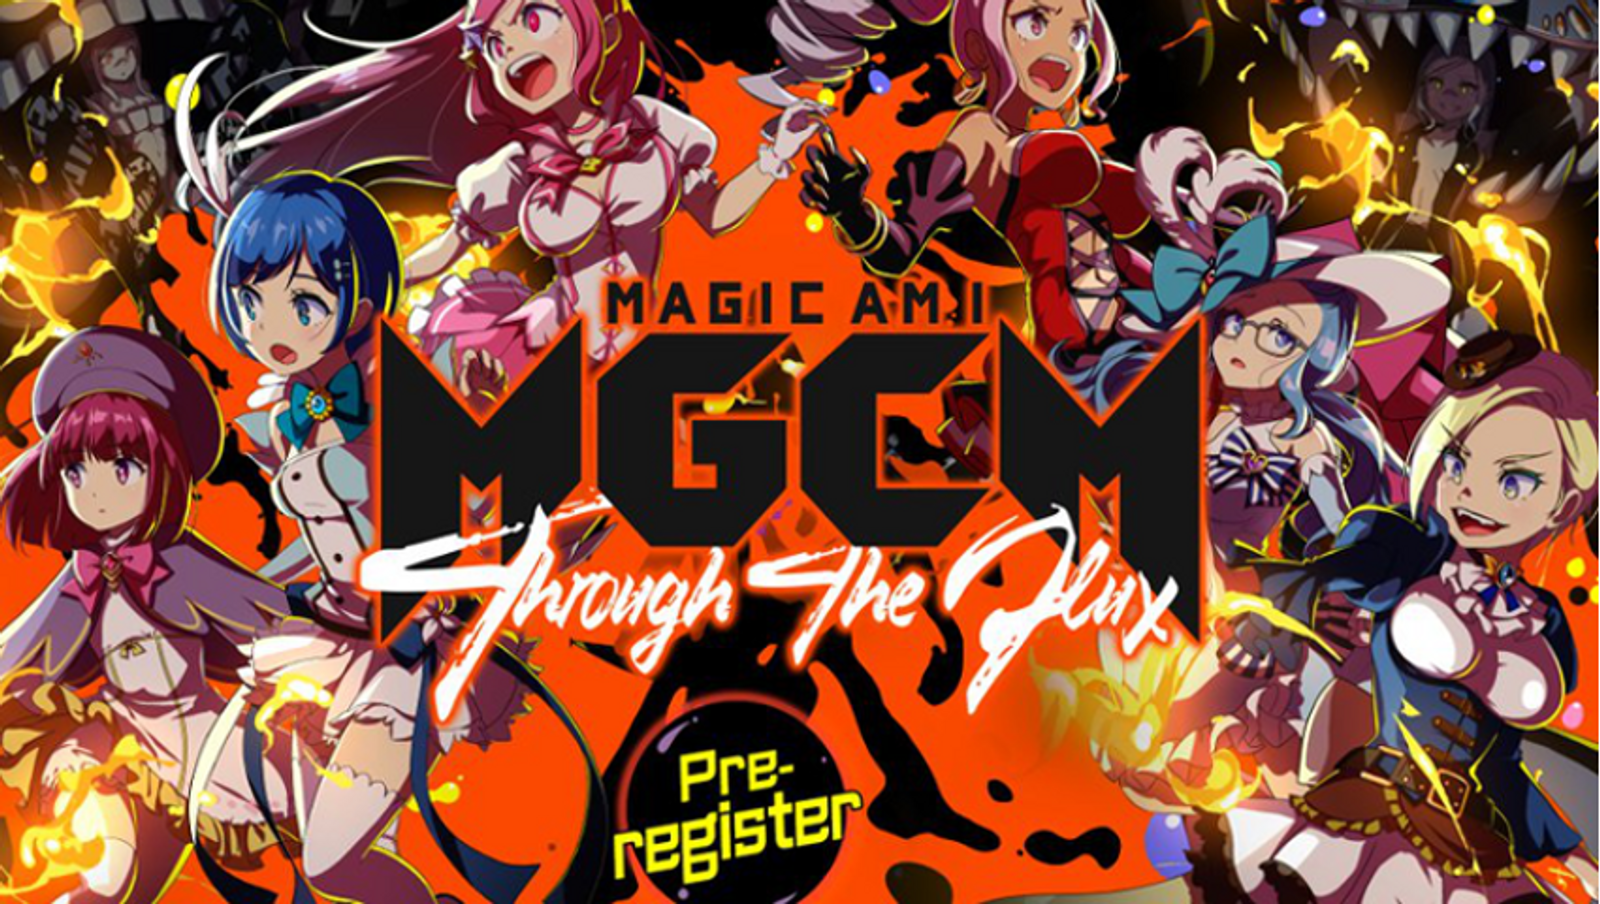 Nutaku Opens Pre-Registration for 'MagicAMI DX' Game